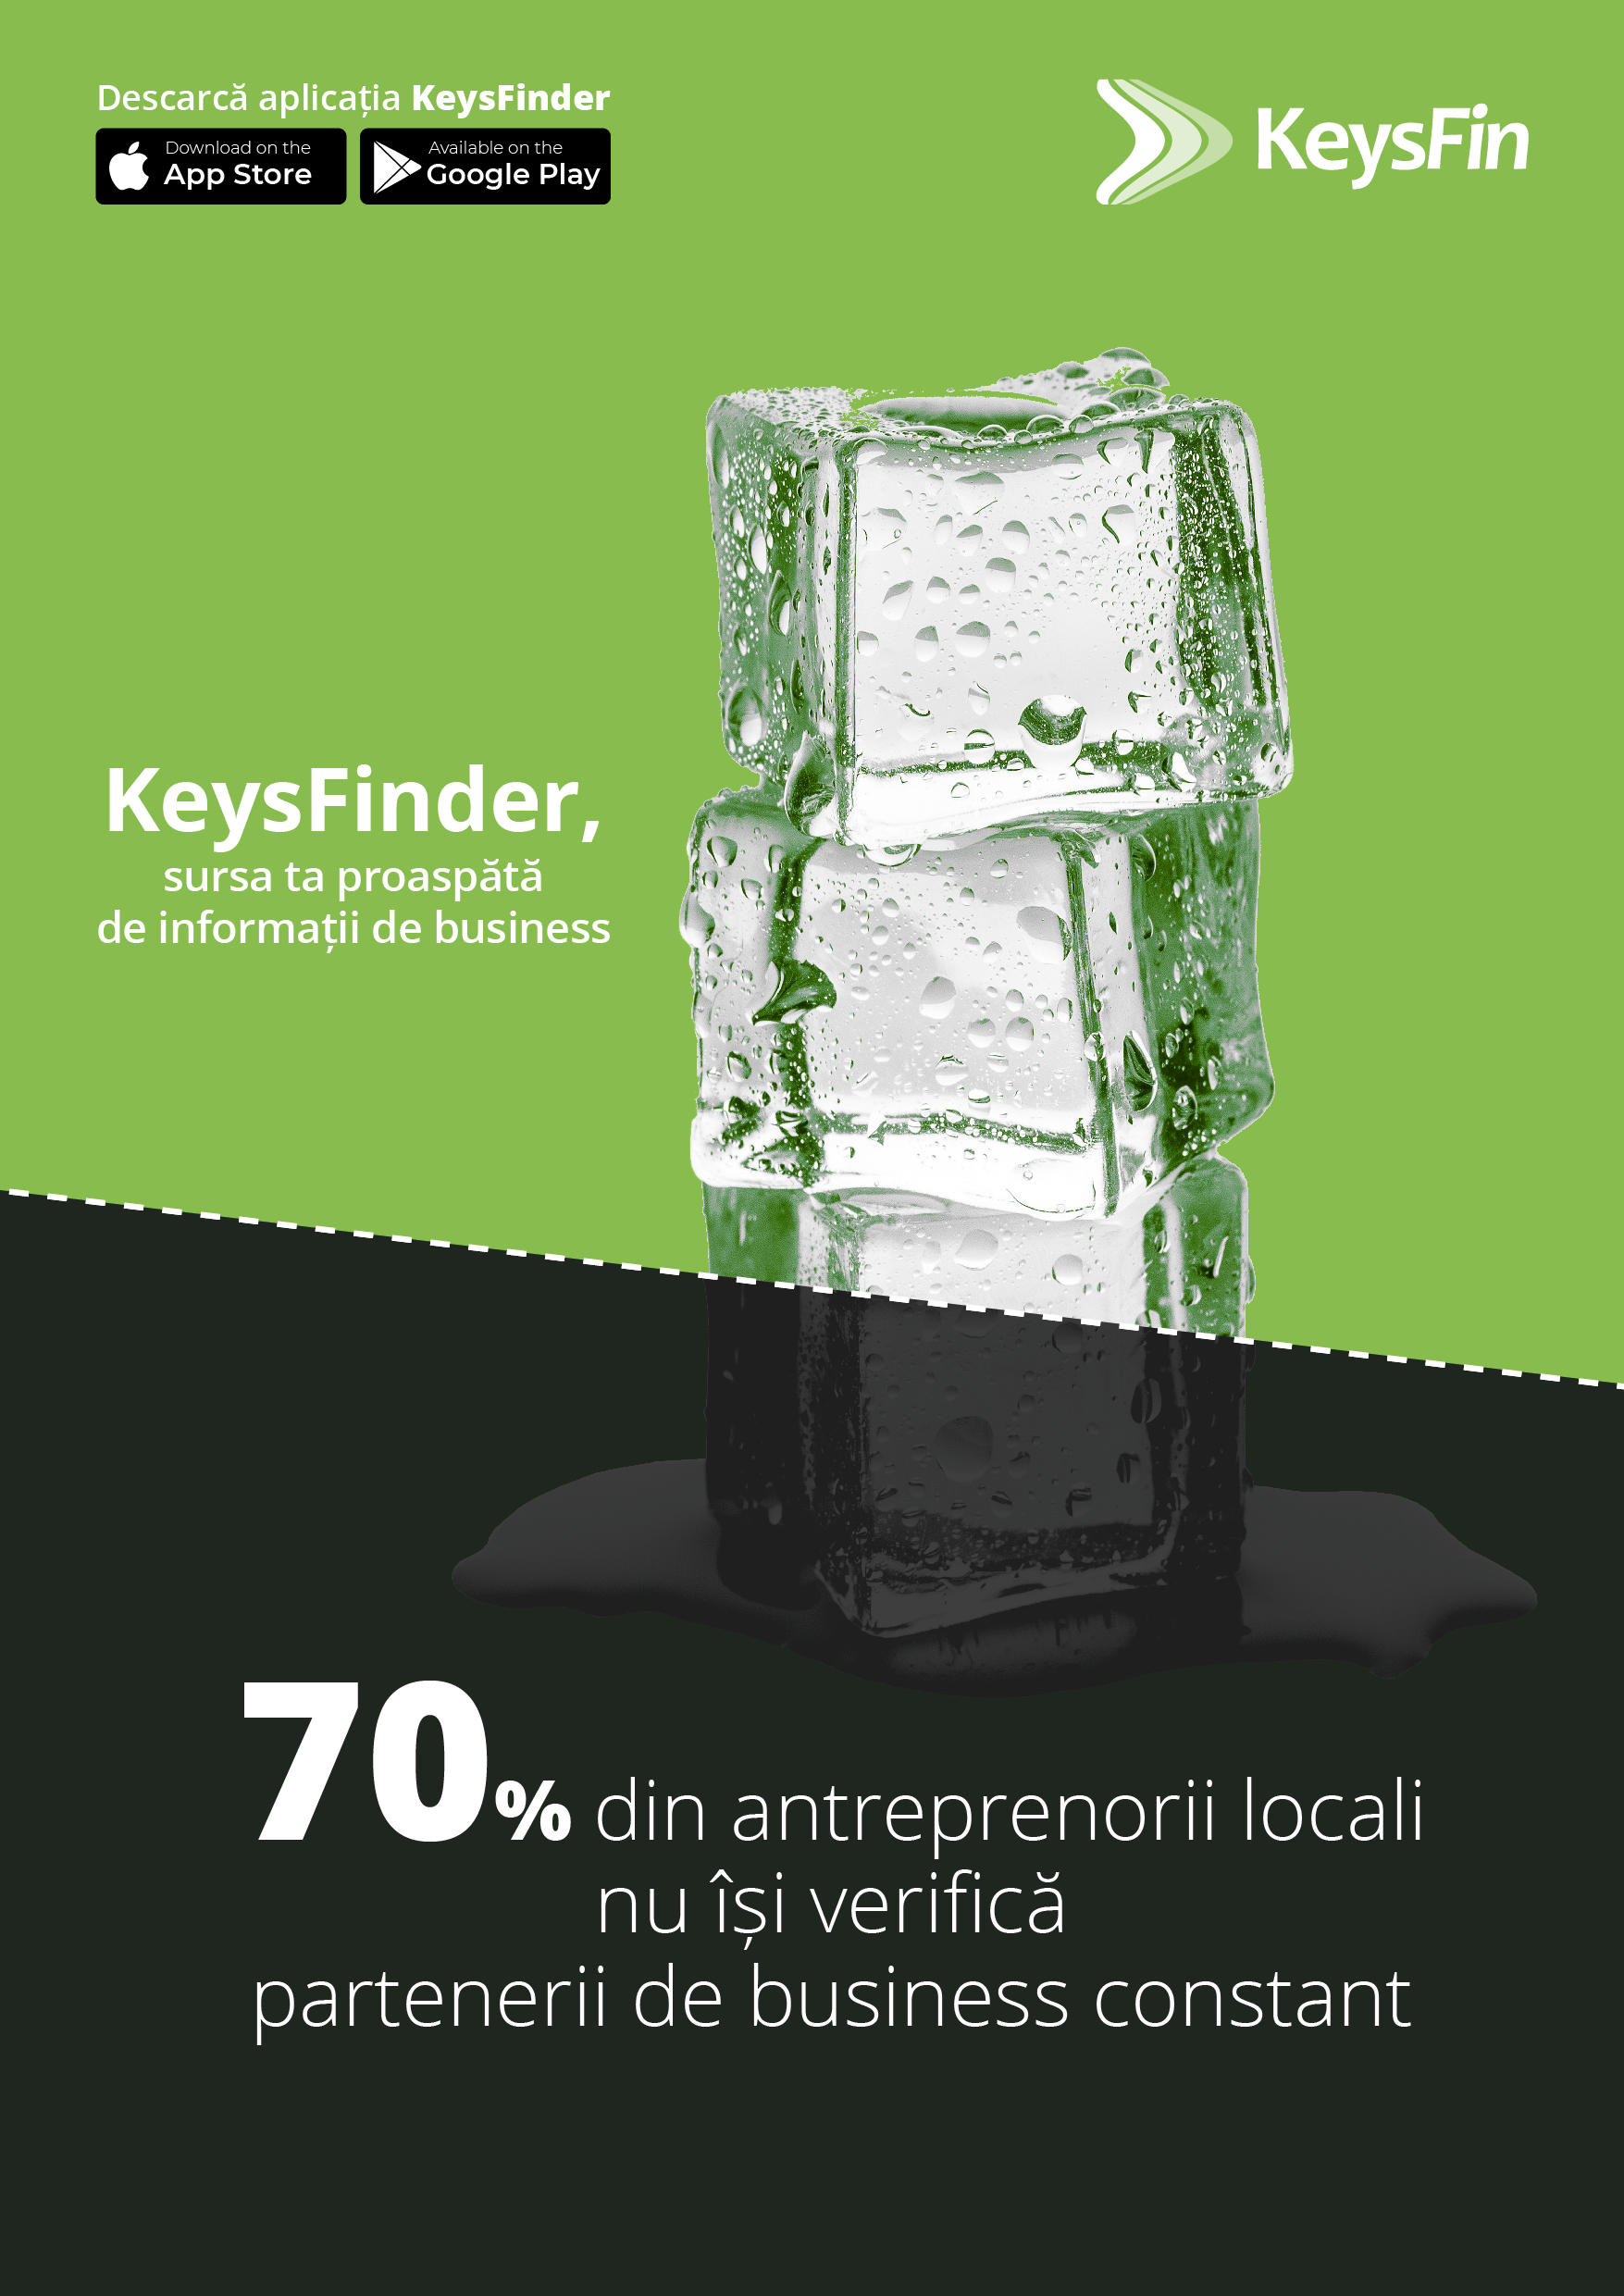 Estimare Keysfin: Peste 70% din antreprenorii locali nu își verifică partenerii de business constant